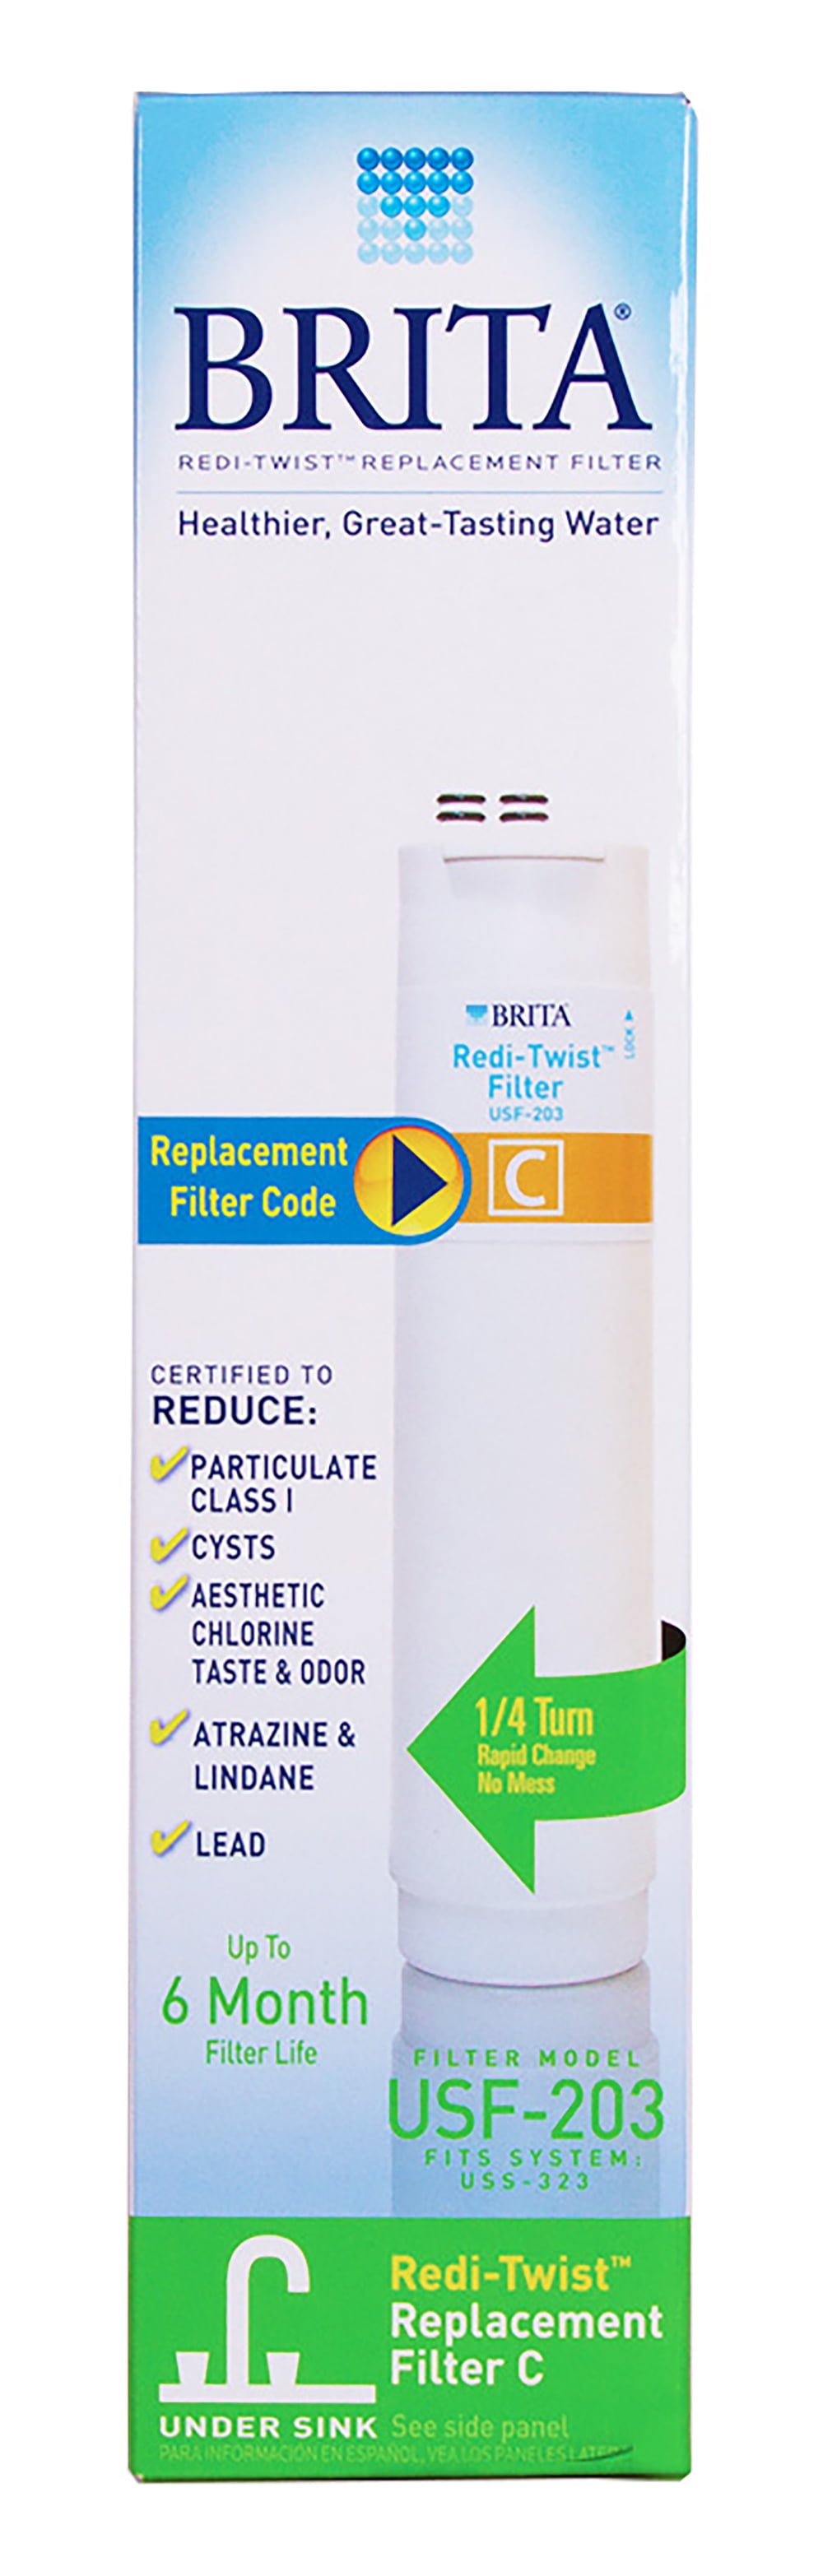 Brita BRITA Redi-twist Under Sink Replacement FilterBrita Drinking Water Filter A 